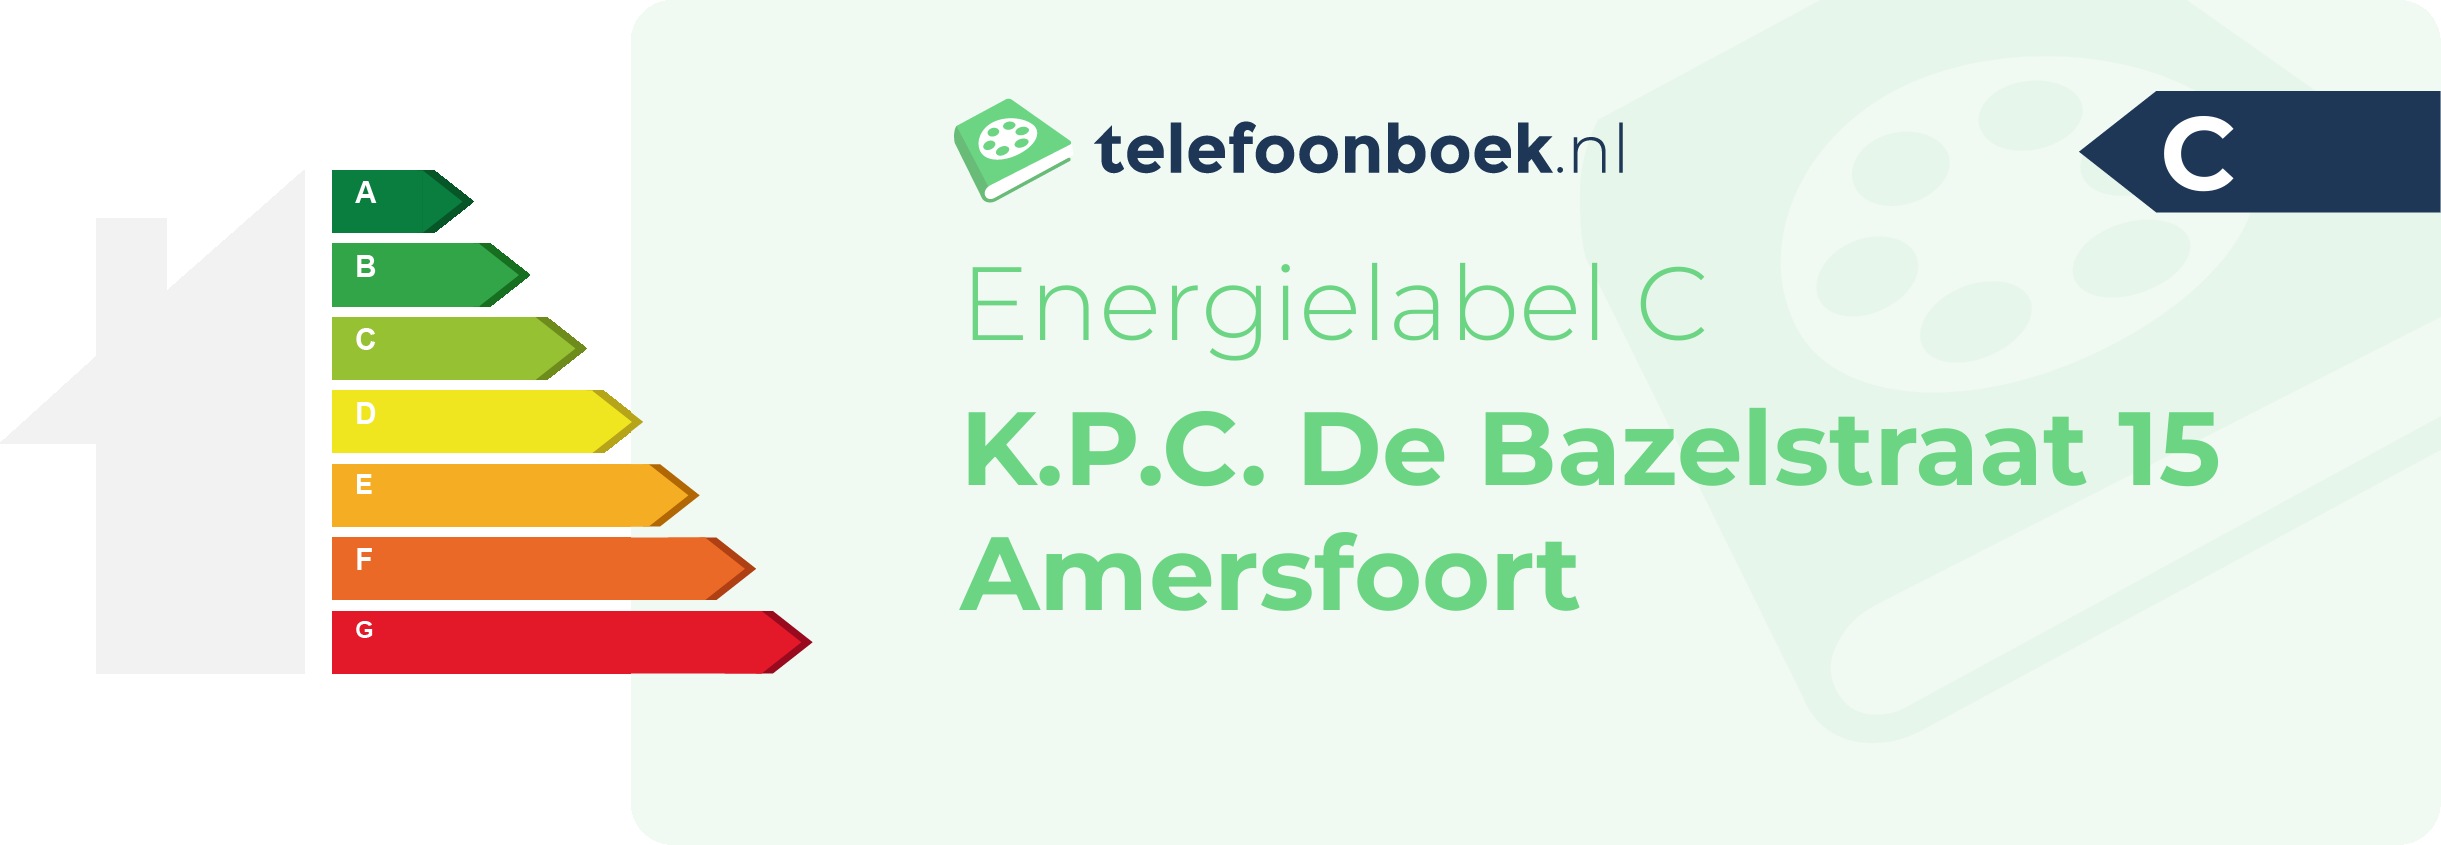 Energielabel K.P.C. De Bazelstraat 15 Amersfoort